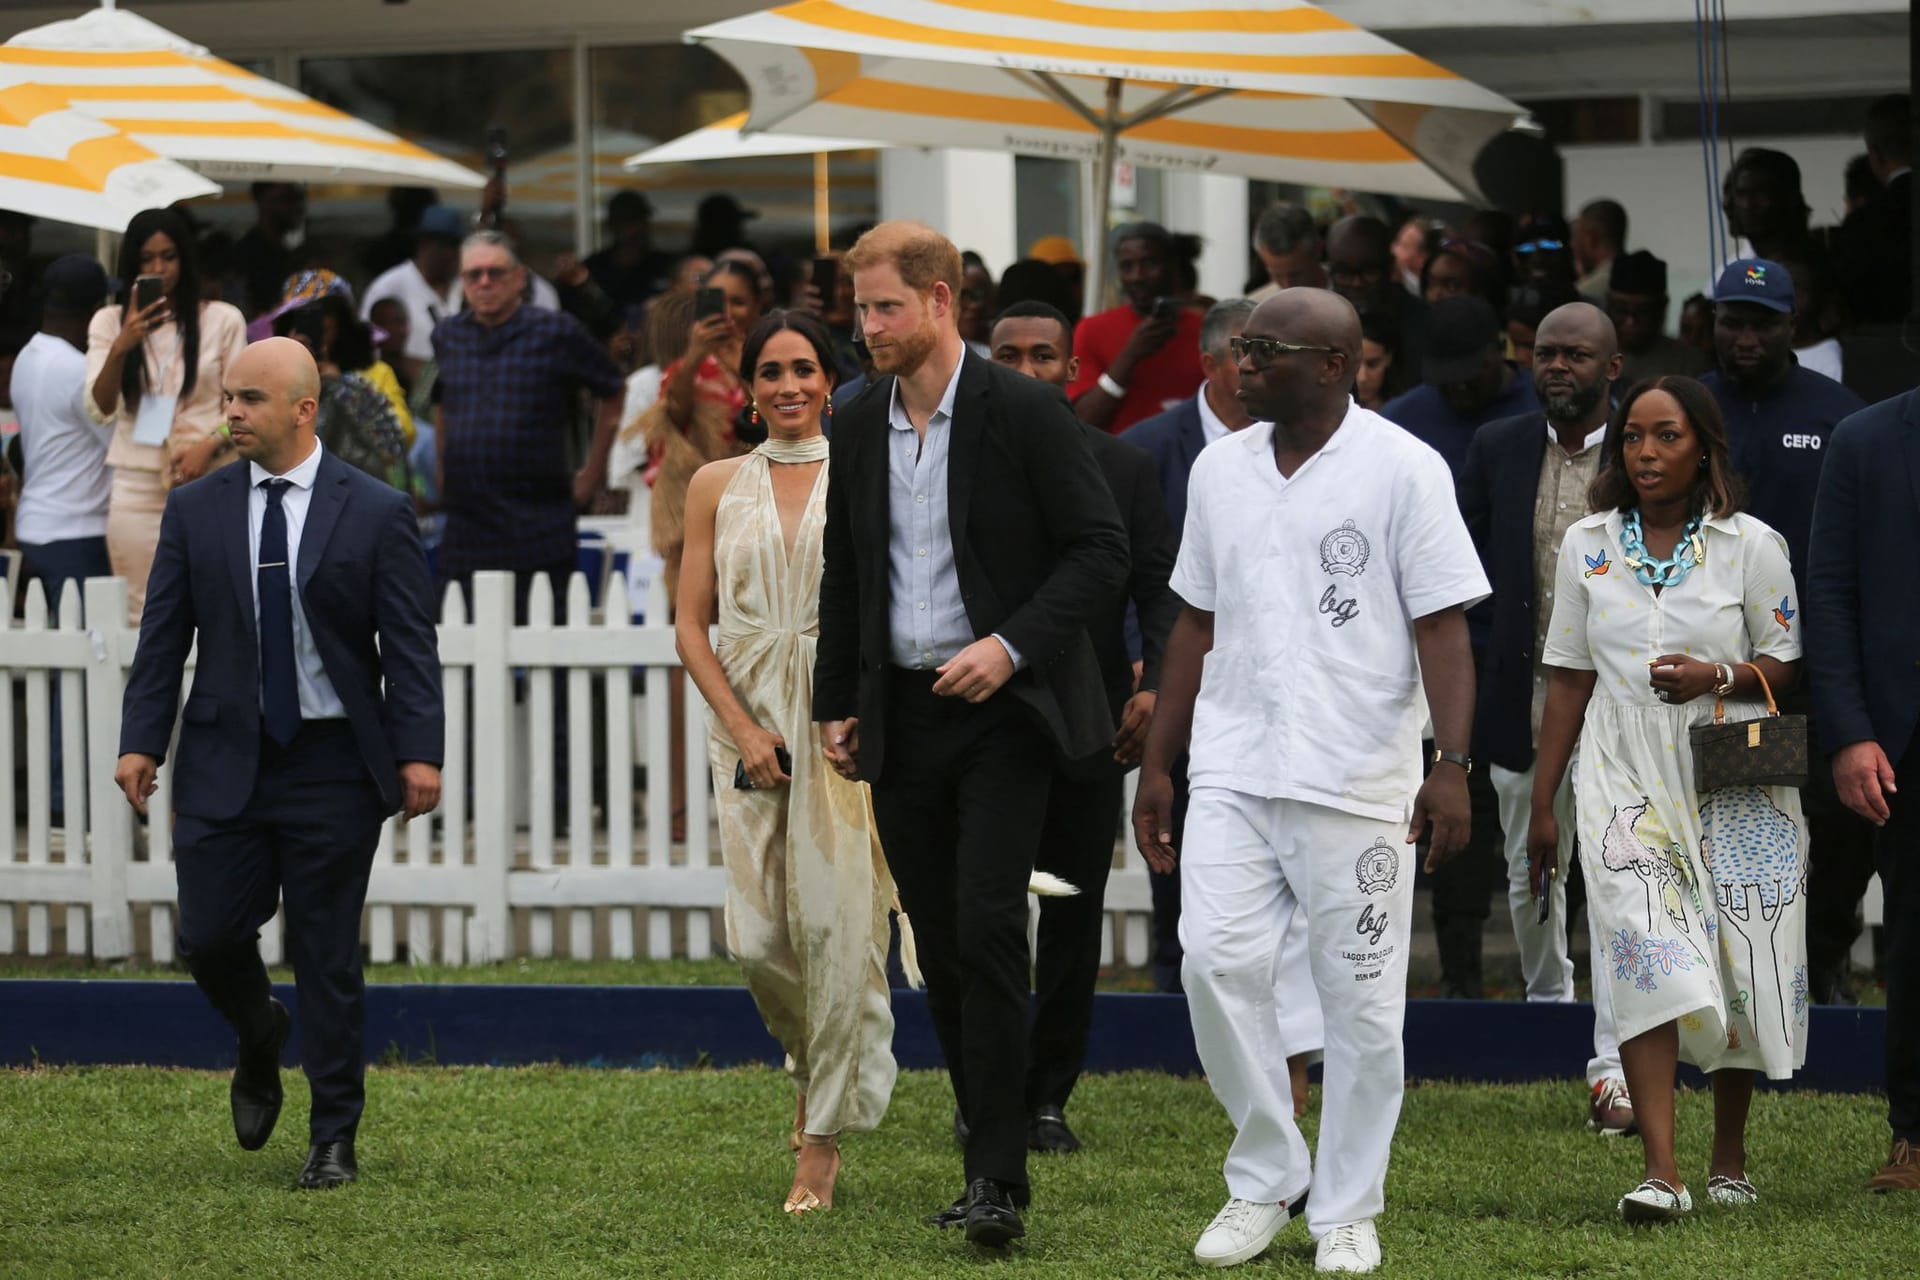 Herzogin Meghan und Prinz Harry laufen über eine Wiese bei einem Fundraiser-Polospiel in Lagos.